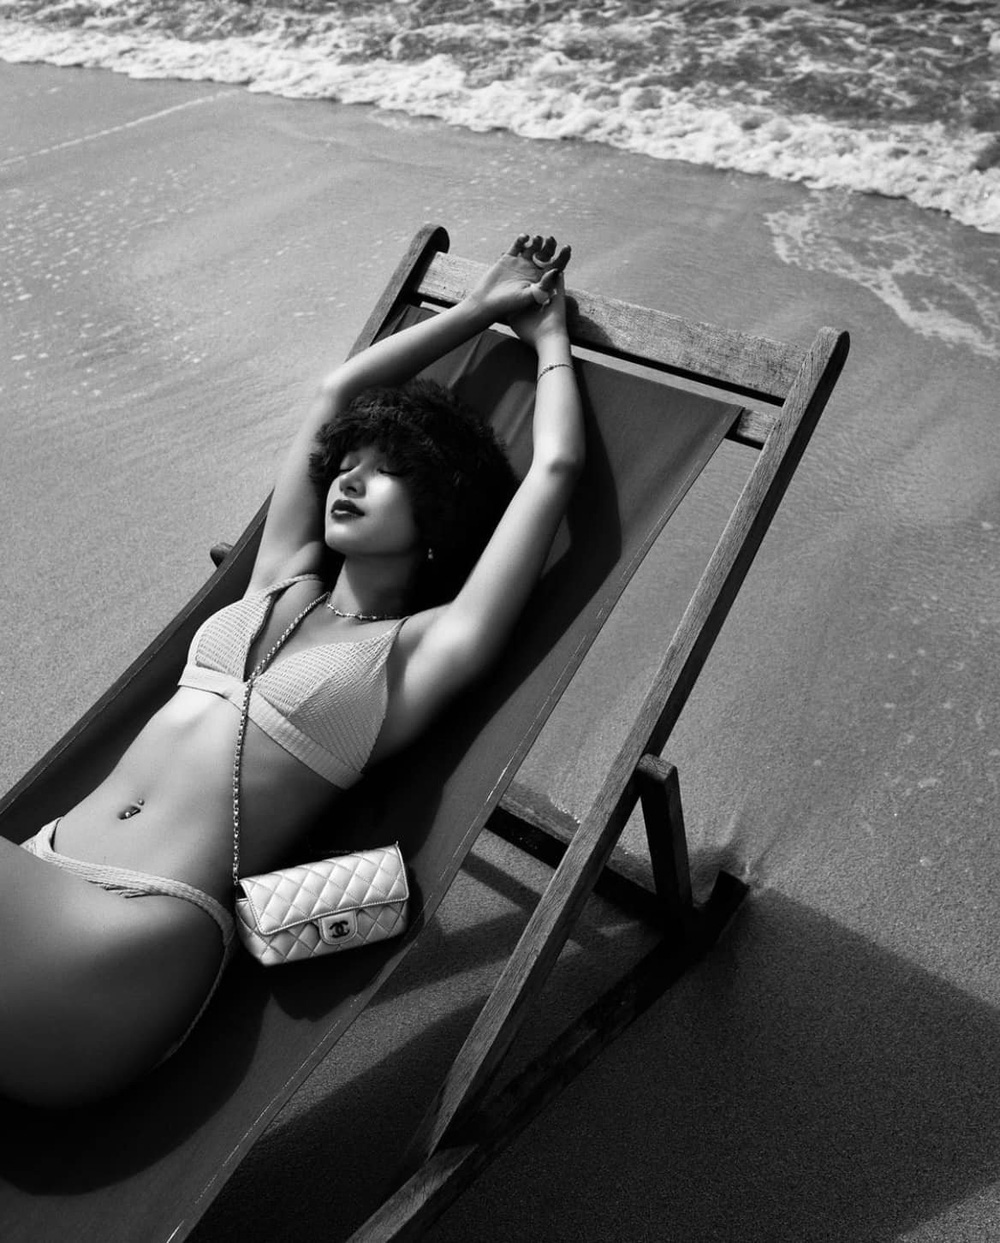 Hot girl Châu Bùi diện bikini khoe thân hình nóng bỏng cùng nhan sắc gợi cảm ở tuổi 25 - Ảnh 2